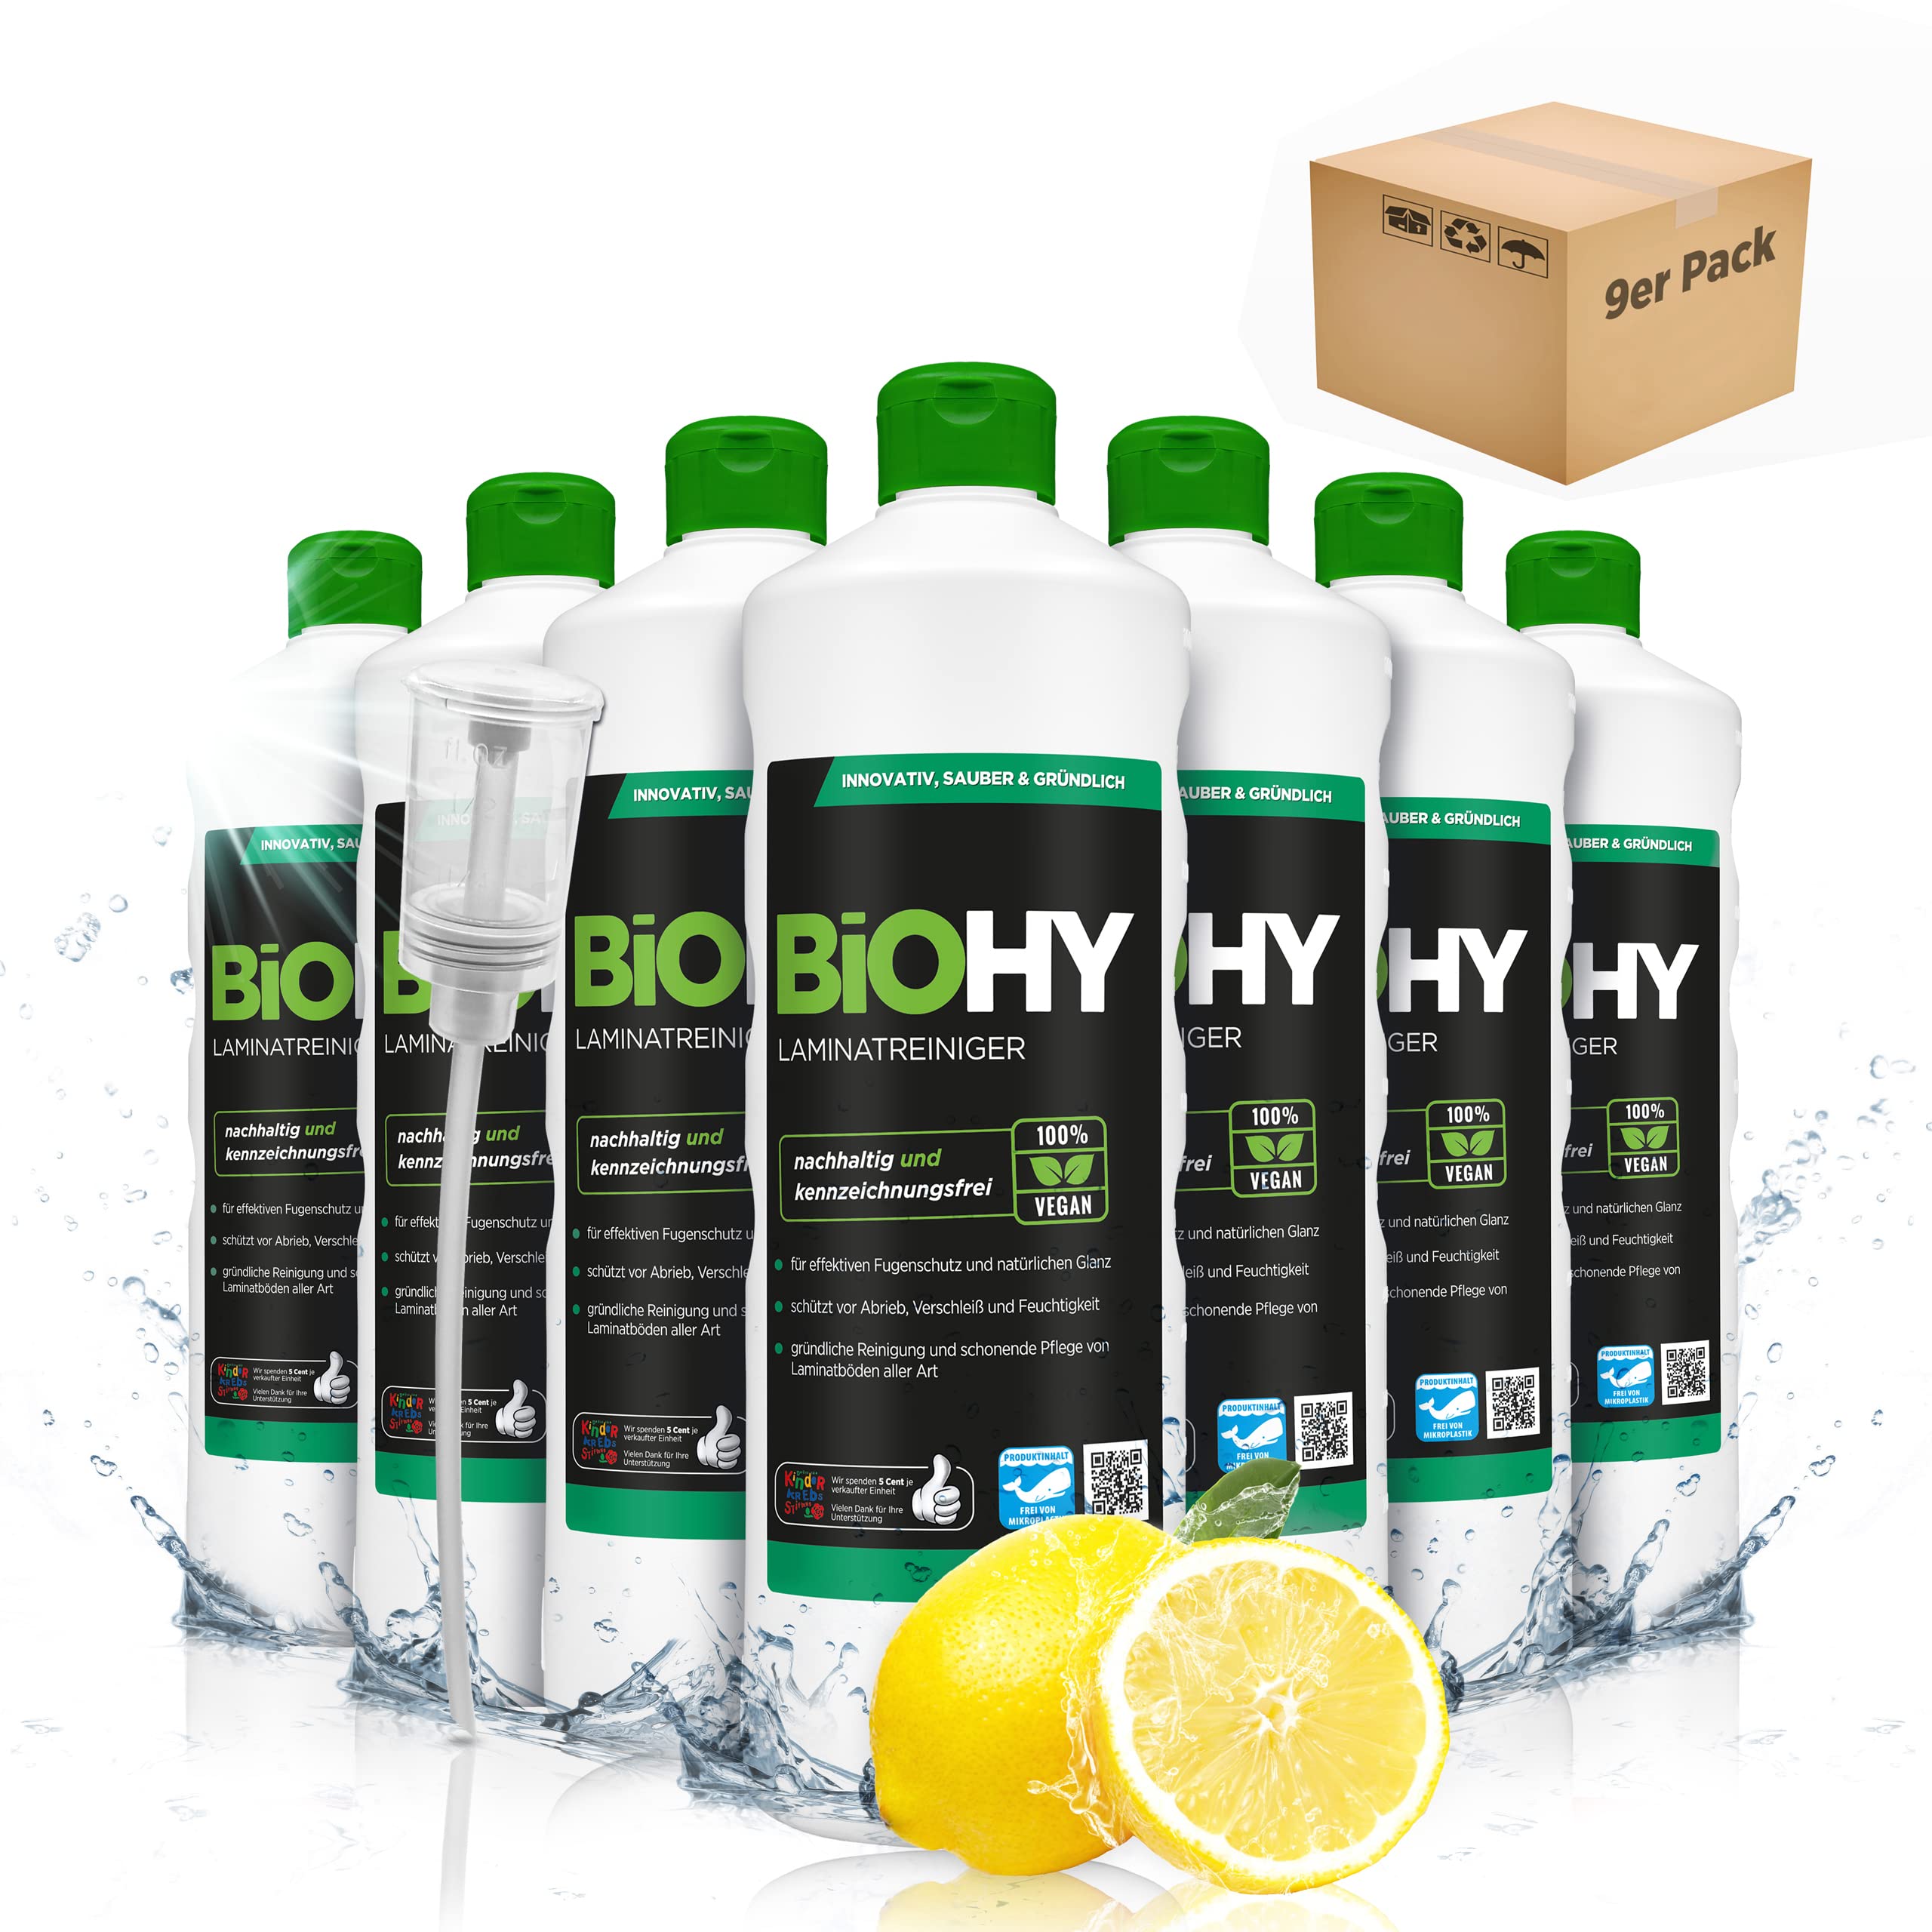 BiOHY Laminatreiniger (9 x 1 Liter) + Dosierer | 2 in 1 Laminatpflege & Reinigungsmittel | reinigt gründlich, schonend & reduziert Wiederverschmutzung | für eine streifenfreie Reinigung